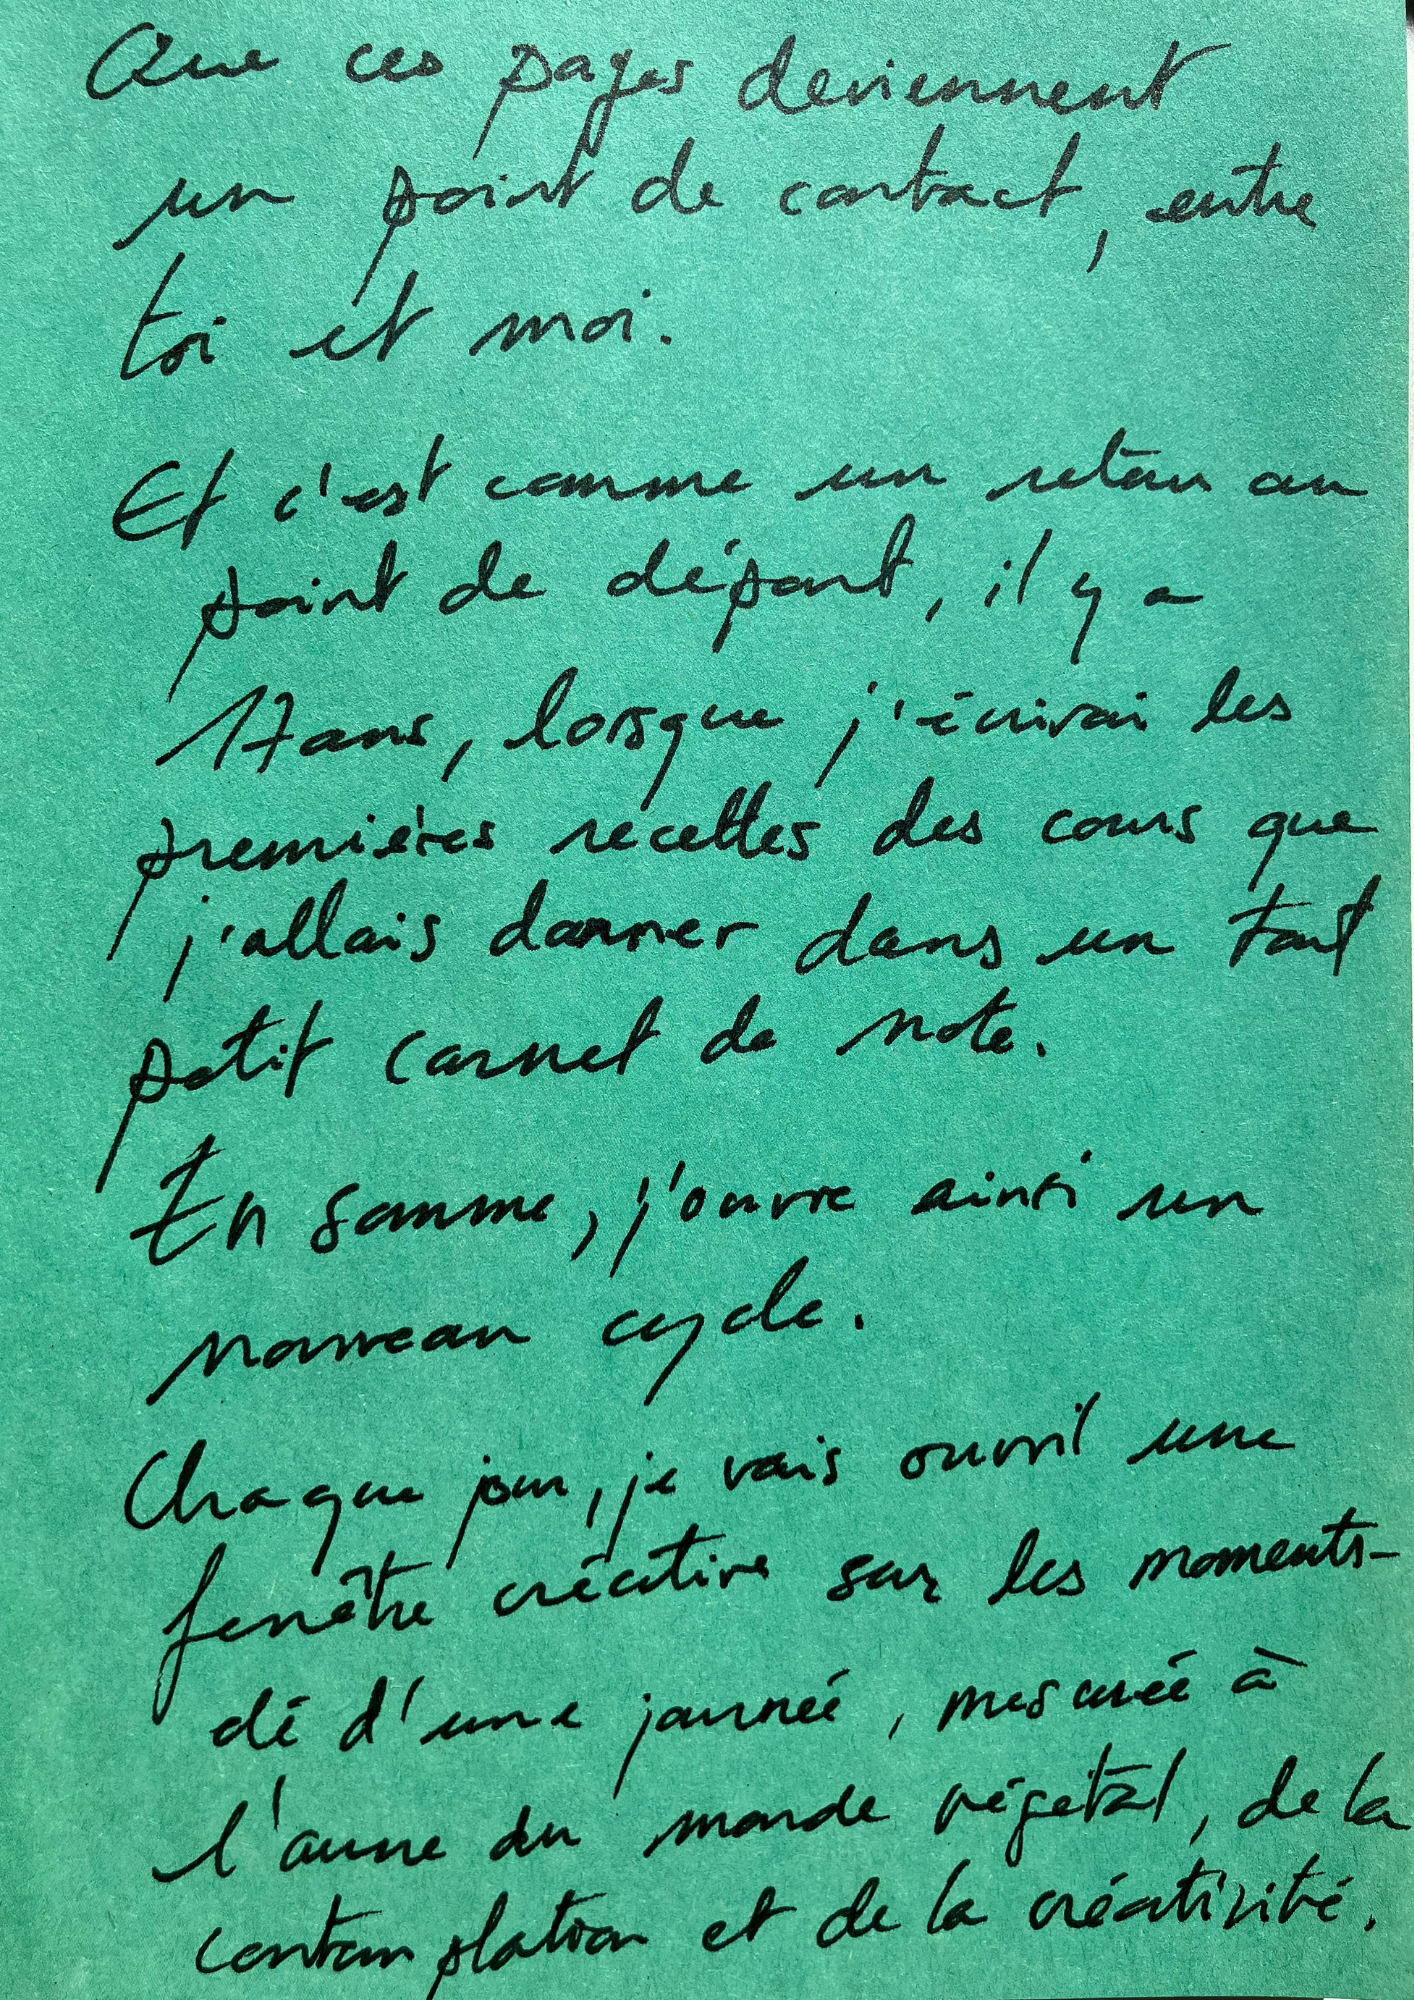 Carnet de notes avec le texte manuscrit des "Chroniques végétales. Un peu sauvages".